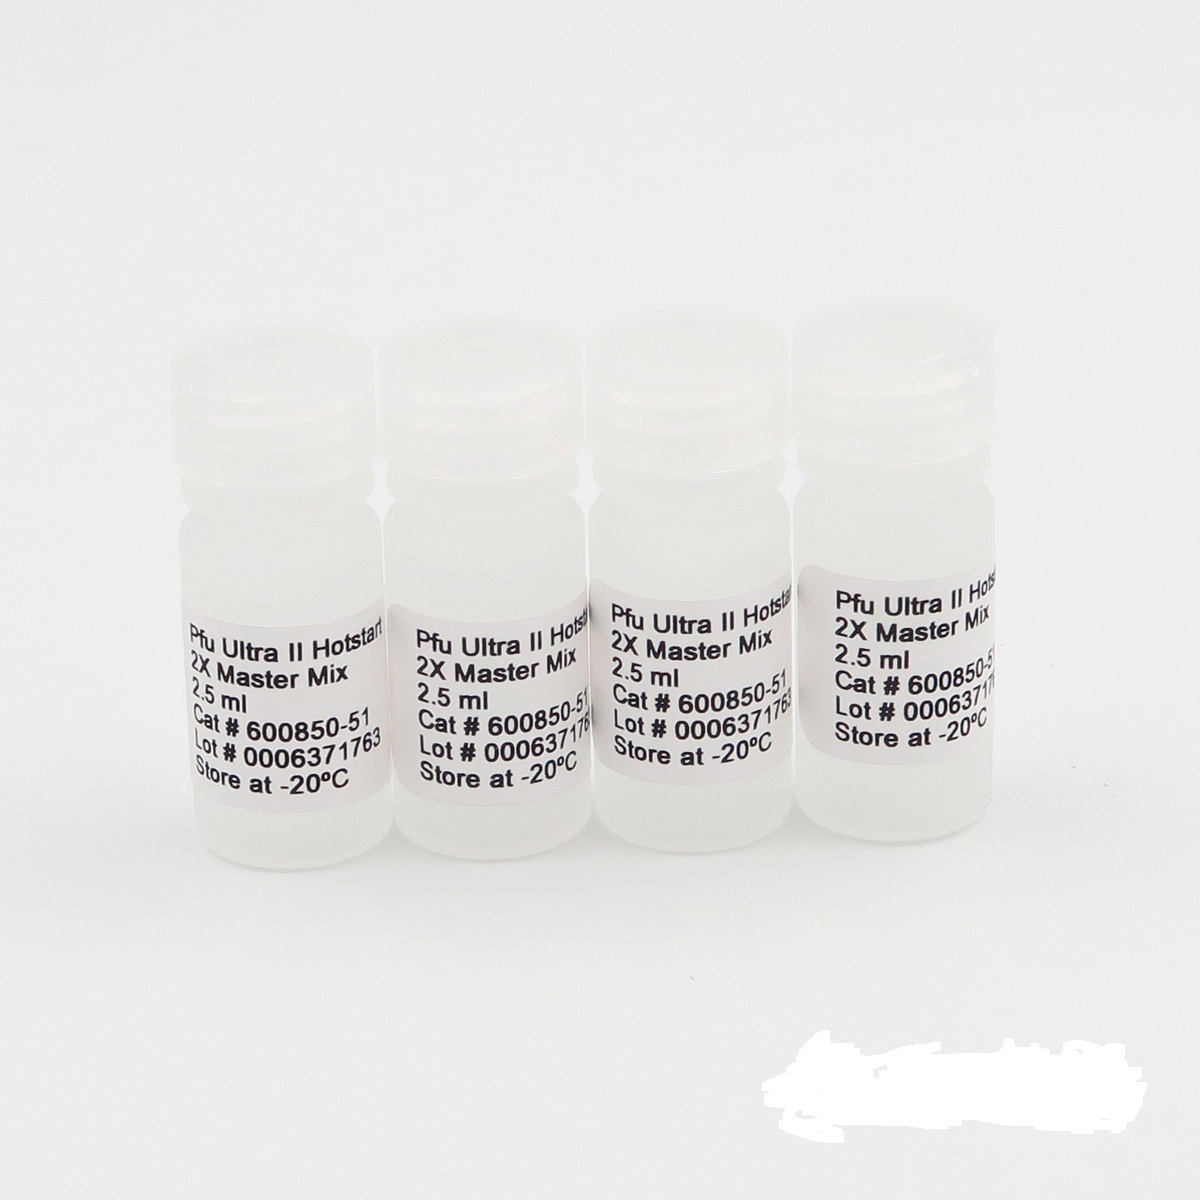 超广谱&#946;-内酰胺酶大肠埃希菌染料法荧光定量PCR试剂盒